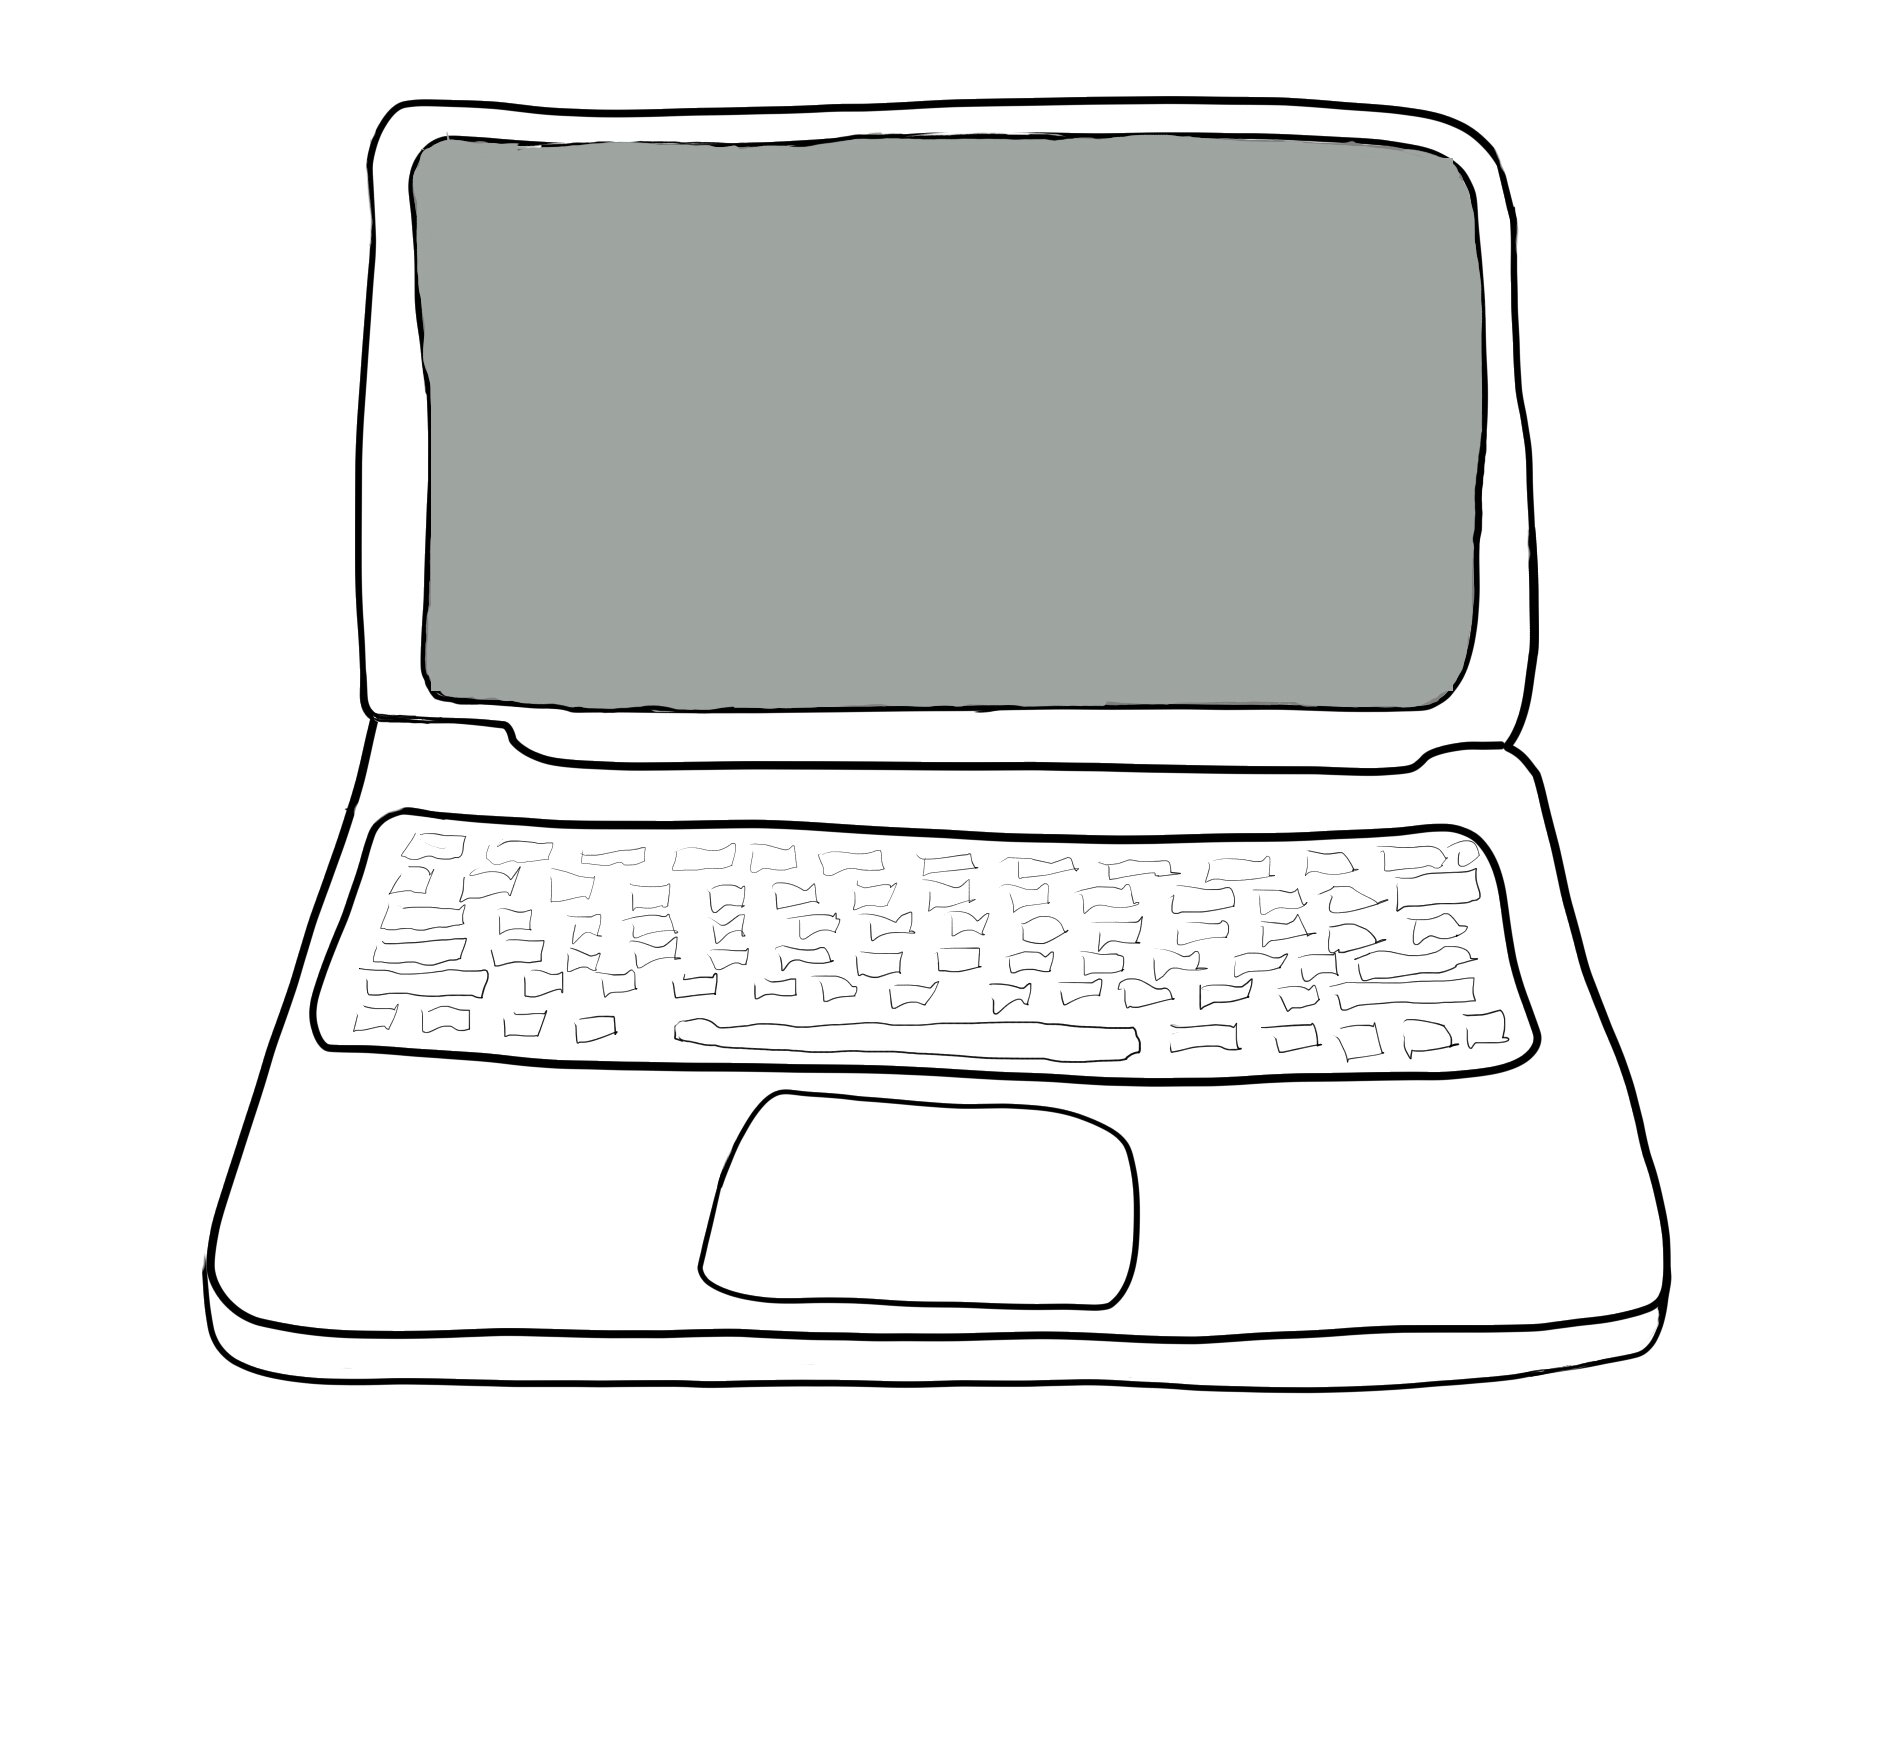 Laptop; 2020, drawn with Krita